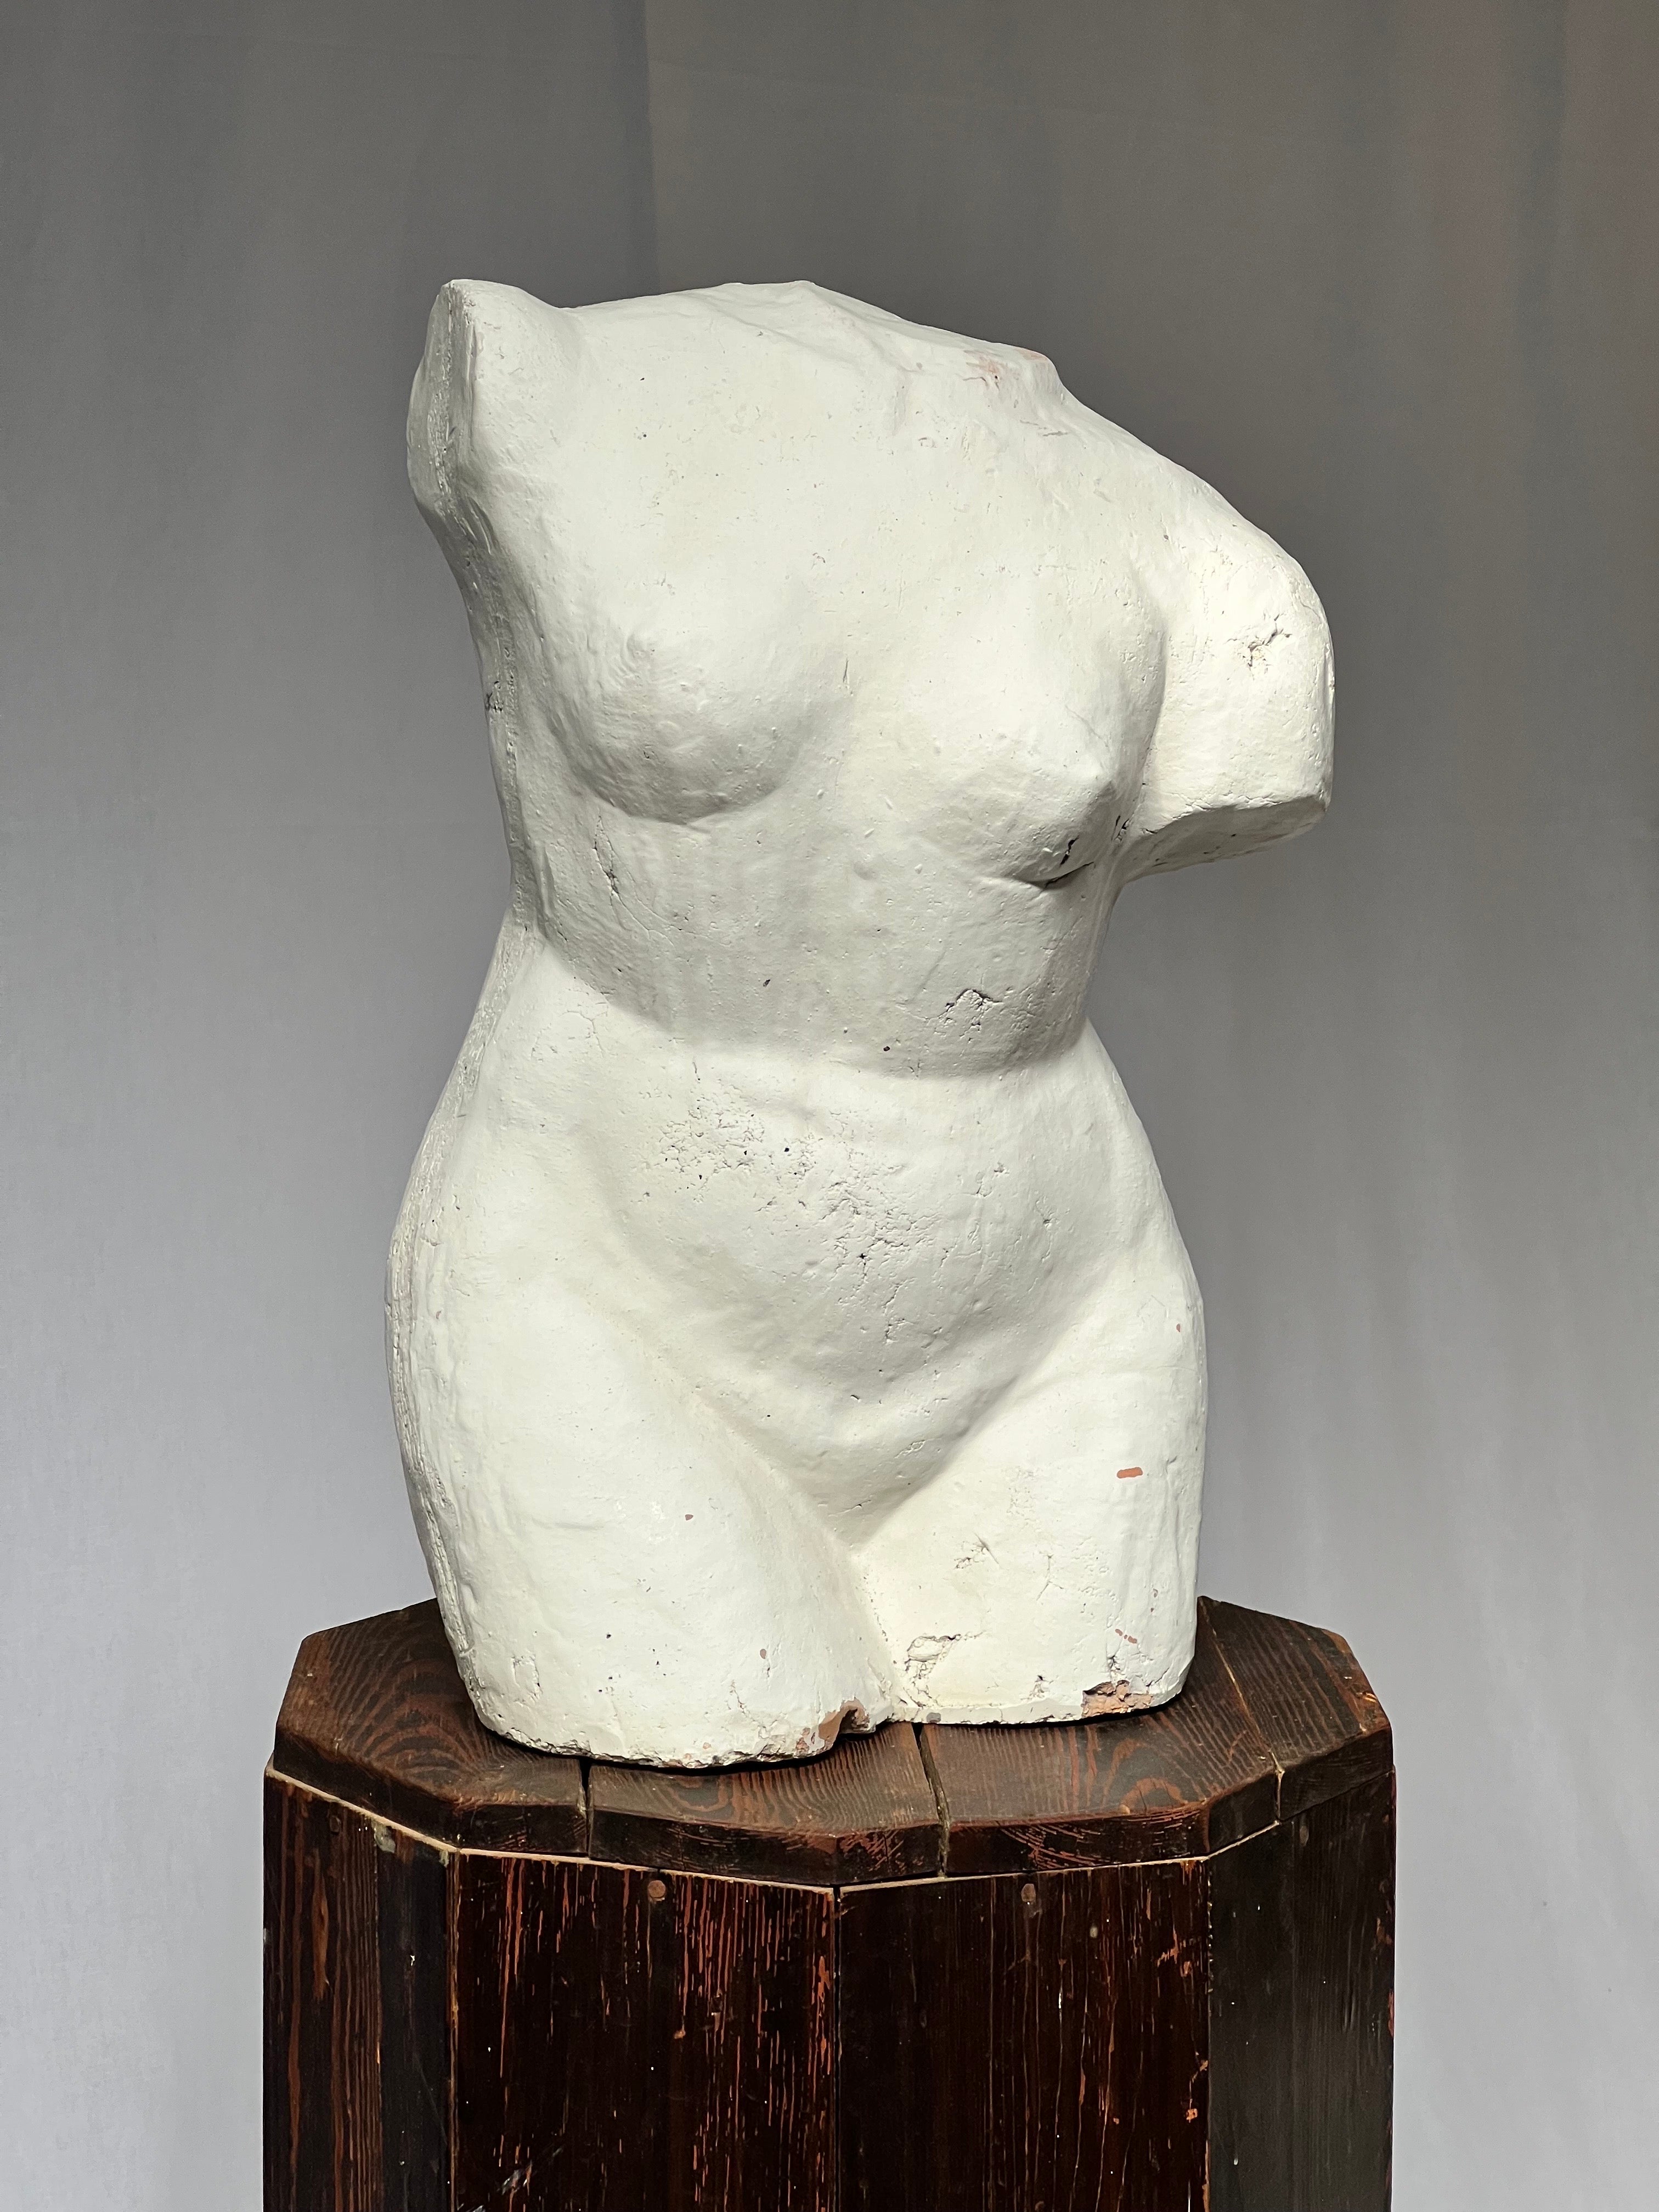 Torse d'une femme nue en argile peinte en blanc. Il s'agit d'une texture brutale avec des motifs et des traces de sa fabrication. Peinture blanche sur l'argile.

Le piédestal est également disponible sur une autre